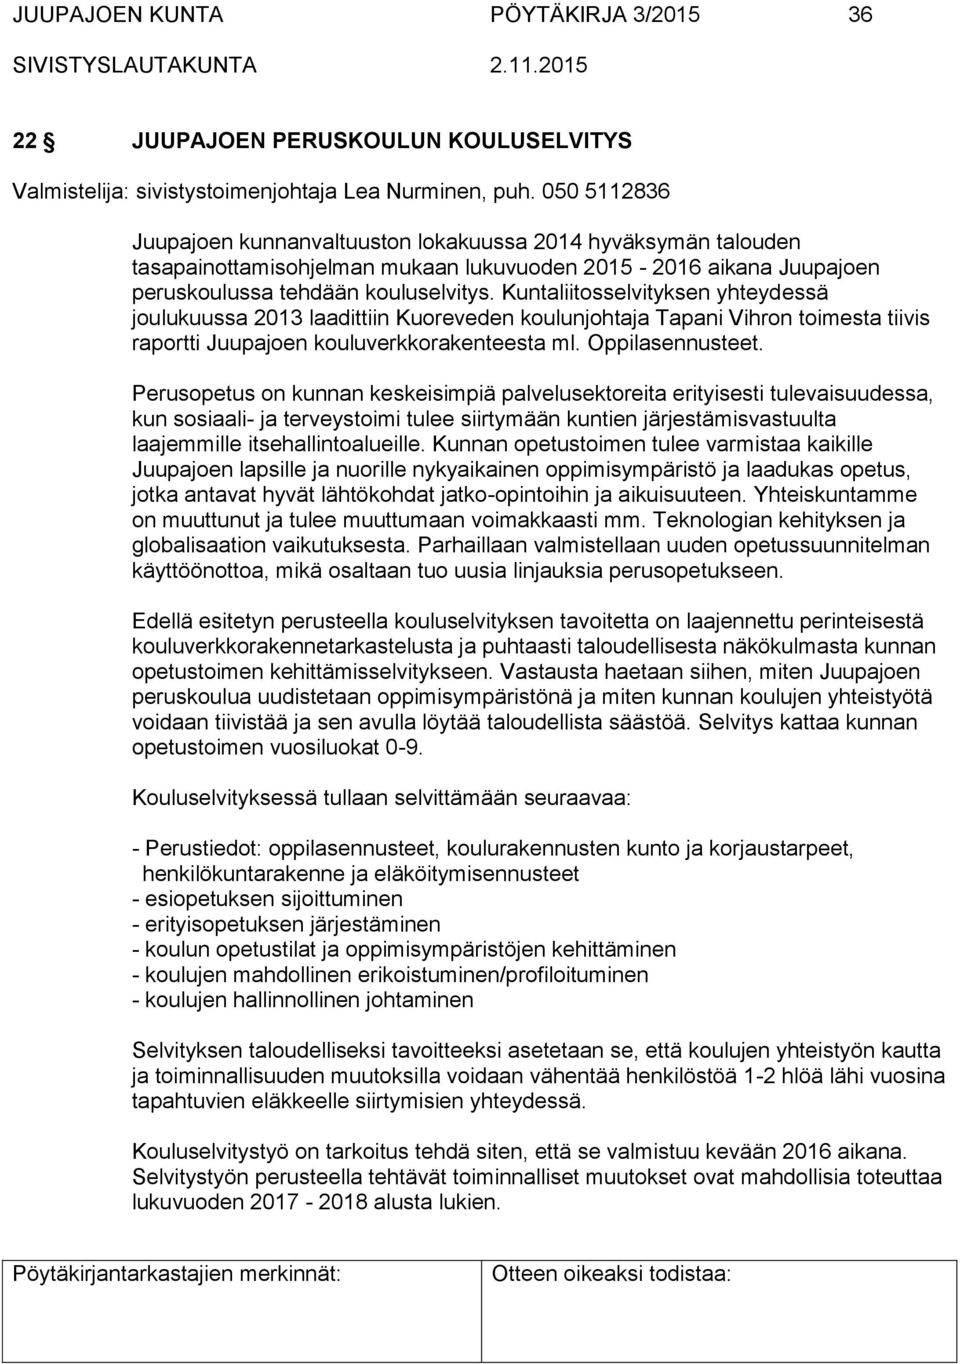 Kuntaliitosselvityksen yhteydessä joulukuussa 2013 laadittiin Kuoreveden koulunjohtaja Tapani Vihron toimesta tiivis raportti Juupajoen kouluverkkorakenteesta ml. Oppilasennusteet.